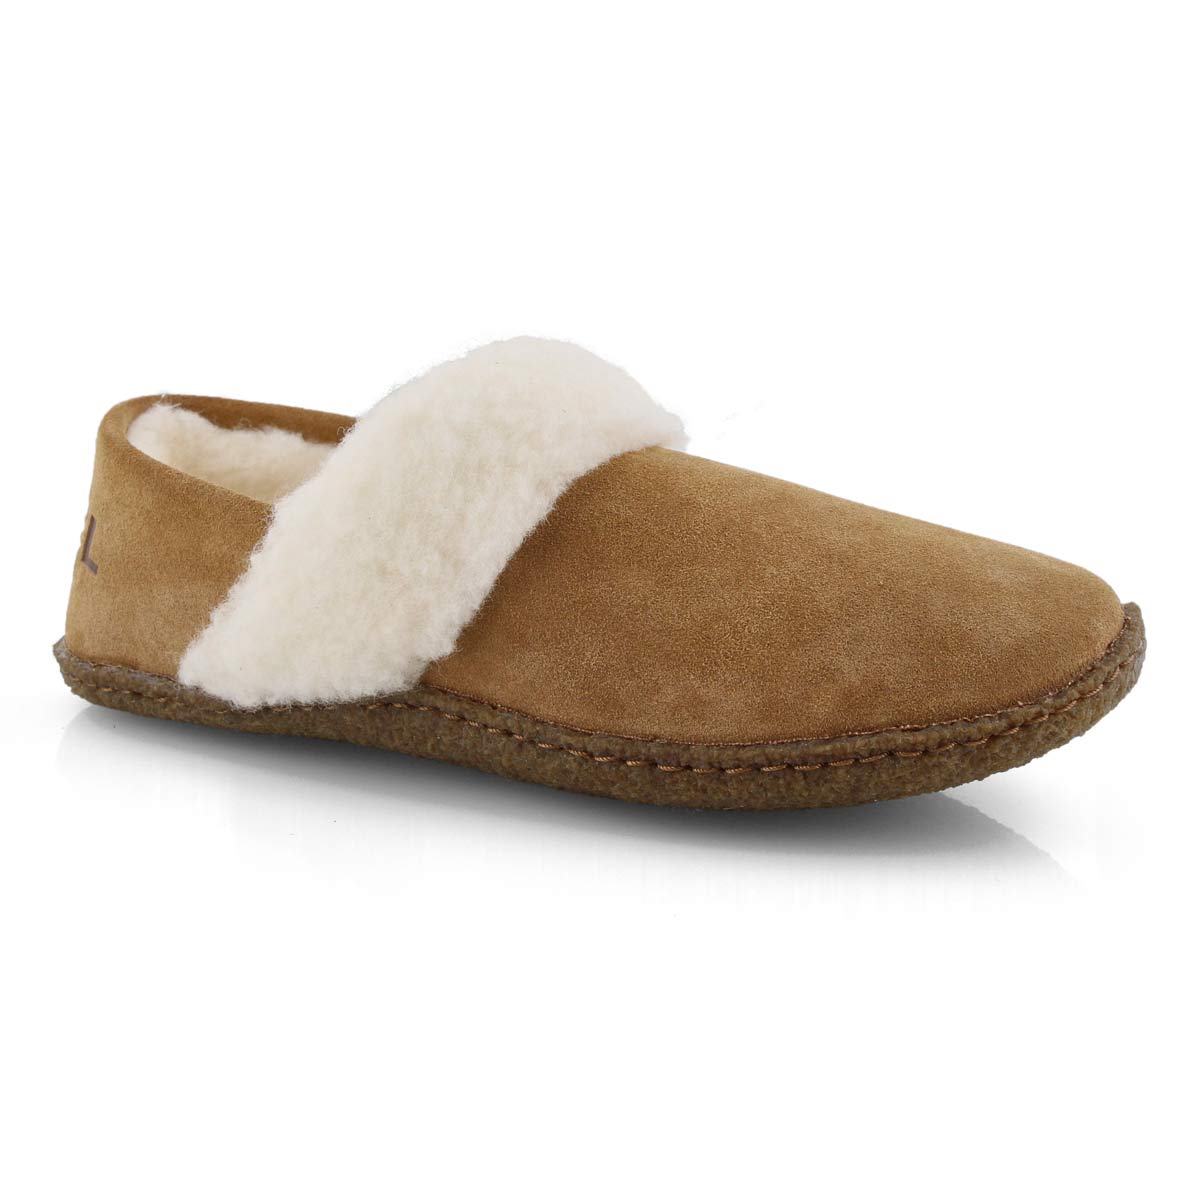 Buy > softmoc sorel slippers > in stock